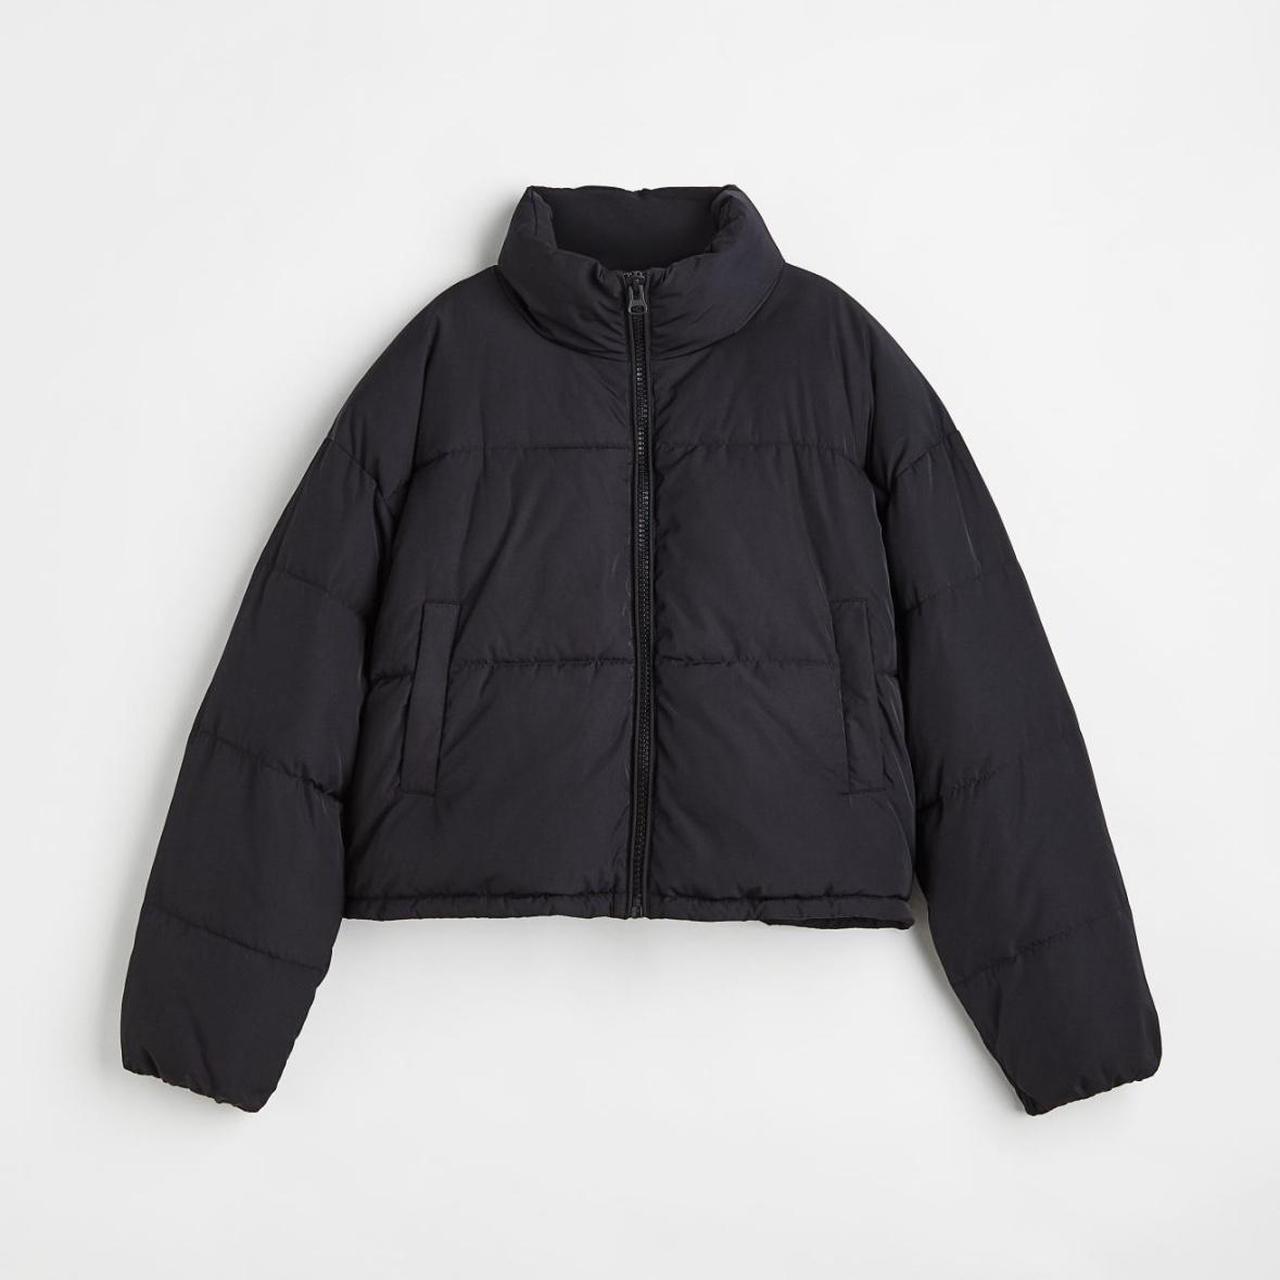 H&M black puffer jacket. Has rip inside on left side. - Depop